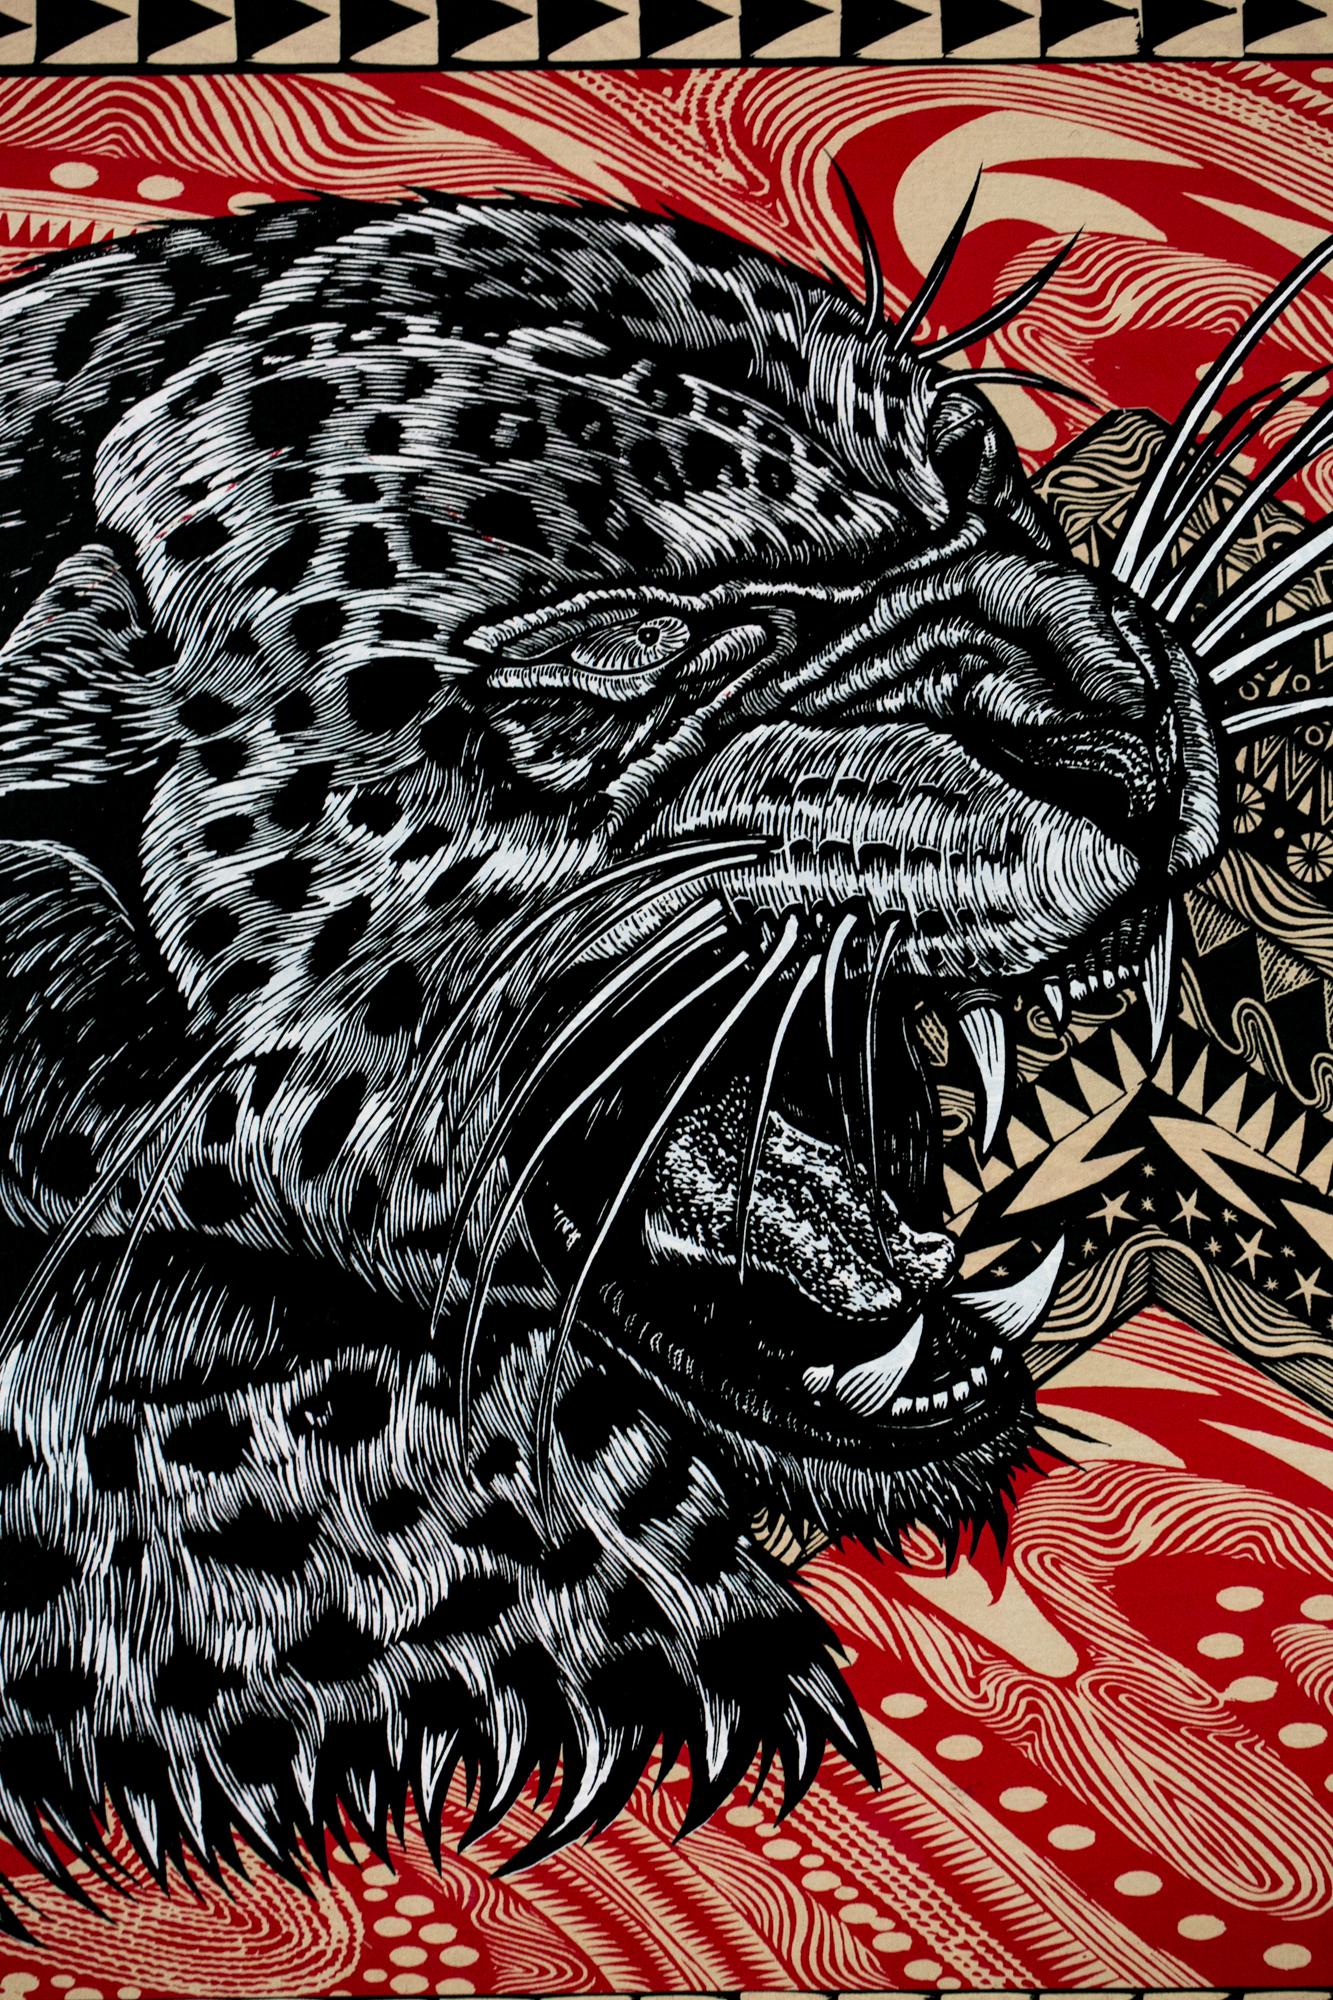 Le léopard de neige cinétique II - Print de Dennis McNett